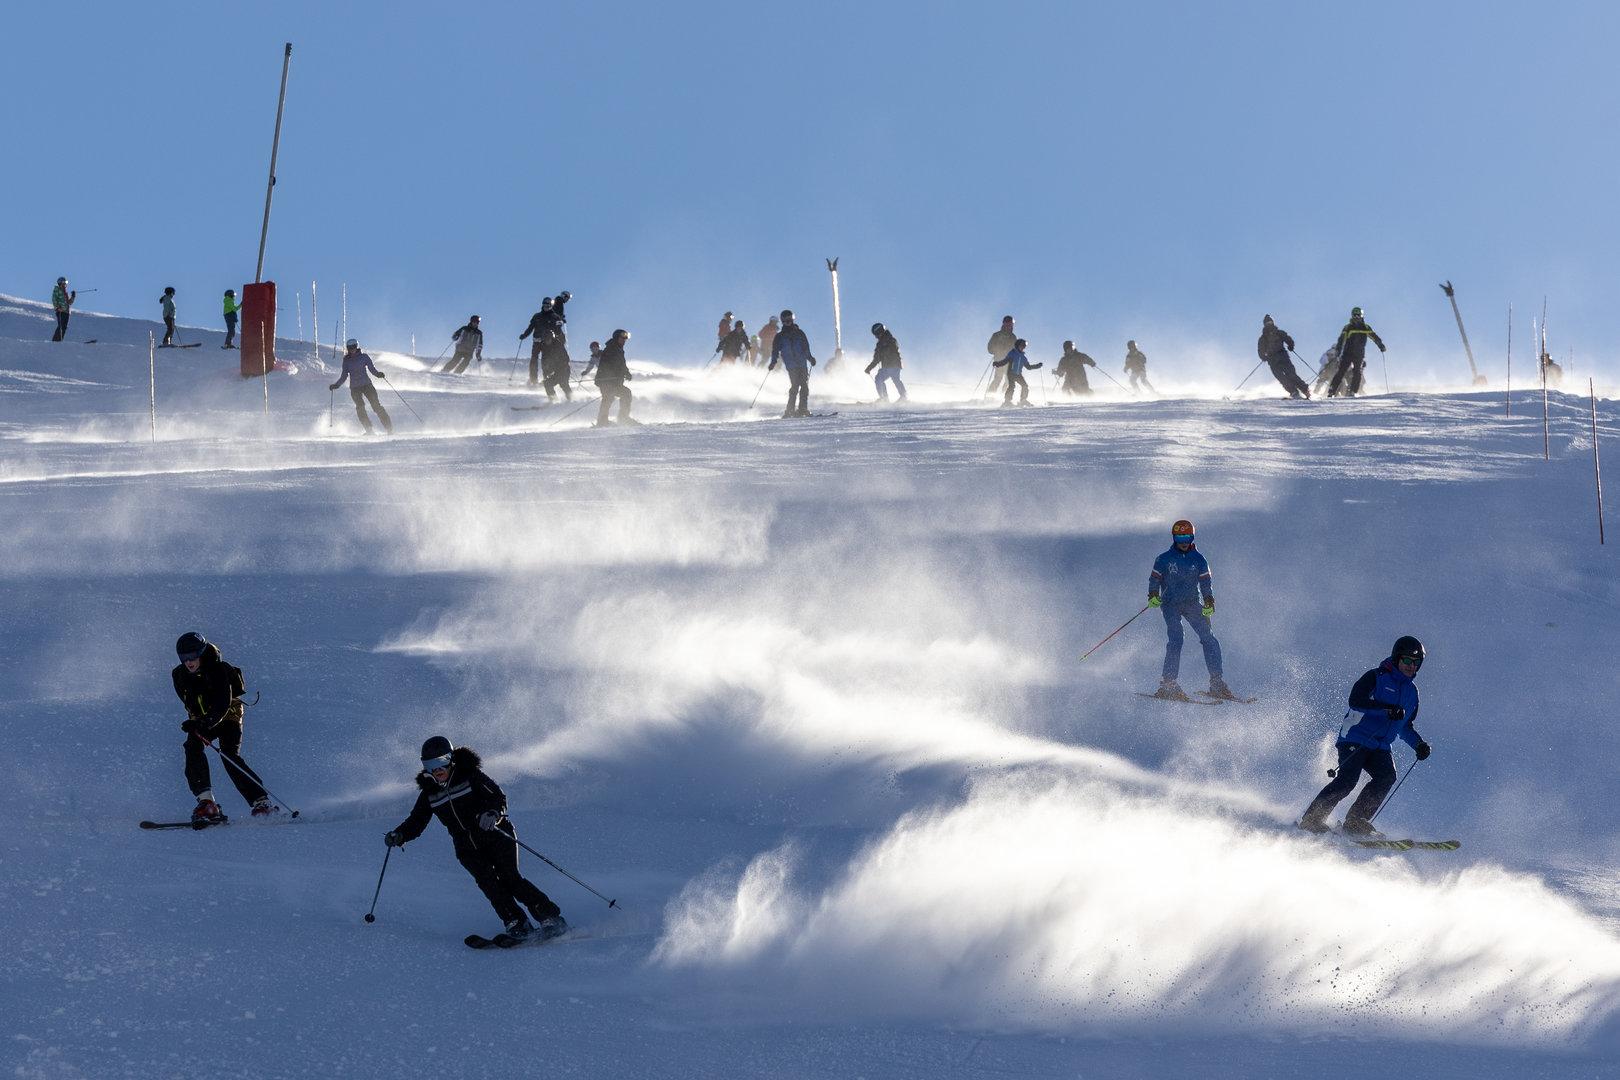 Teurere Liftkarten: Kosten sind Hauptargument gegen das Skifahren